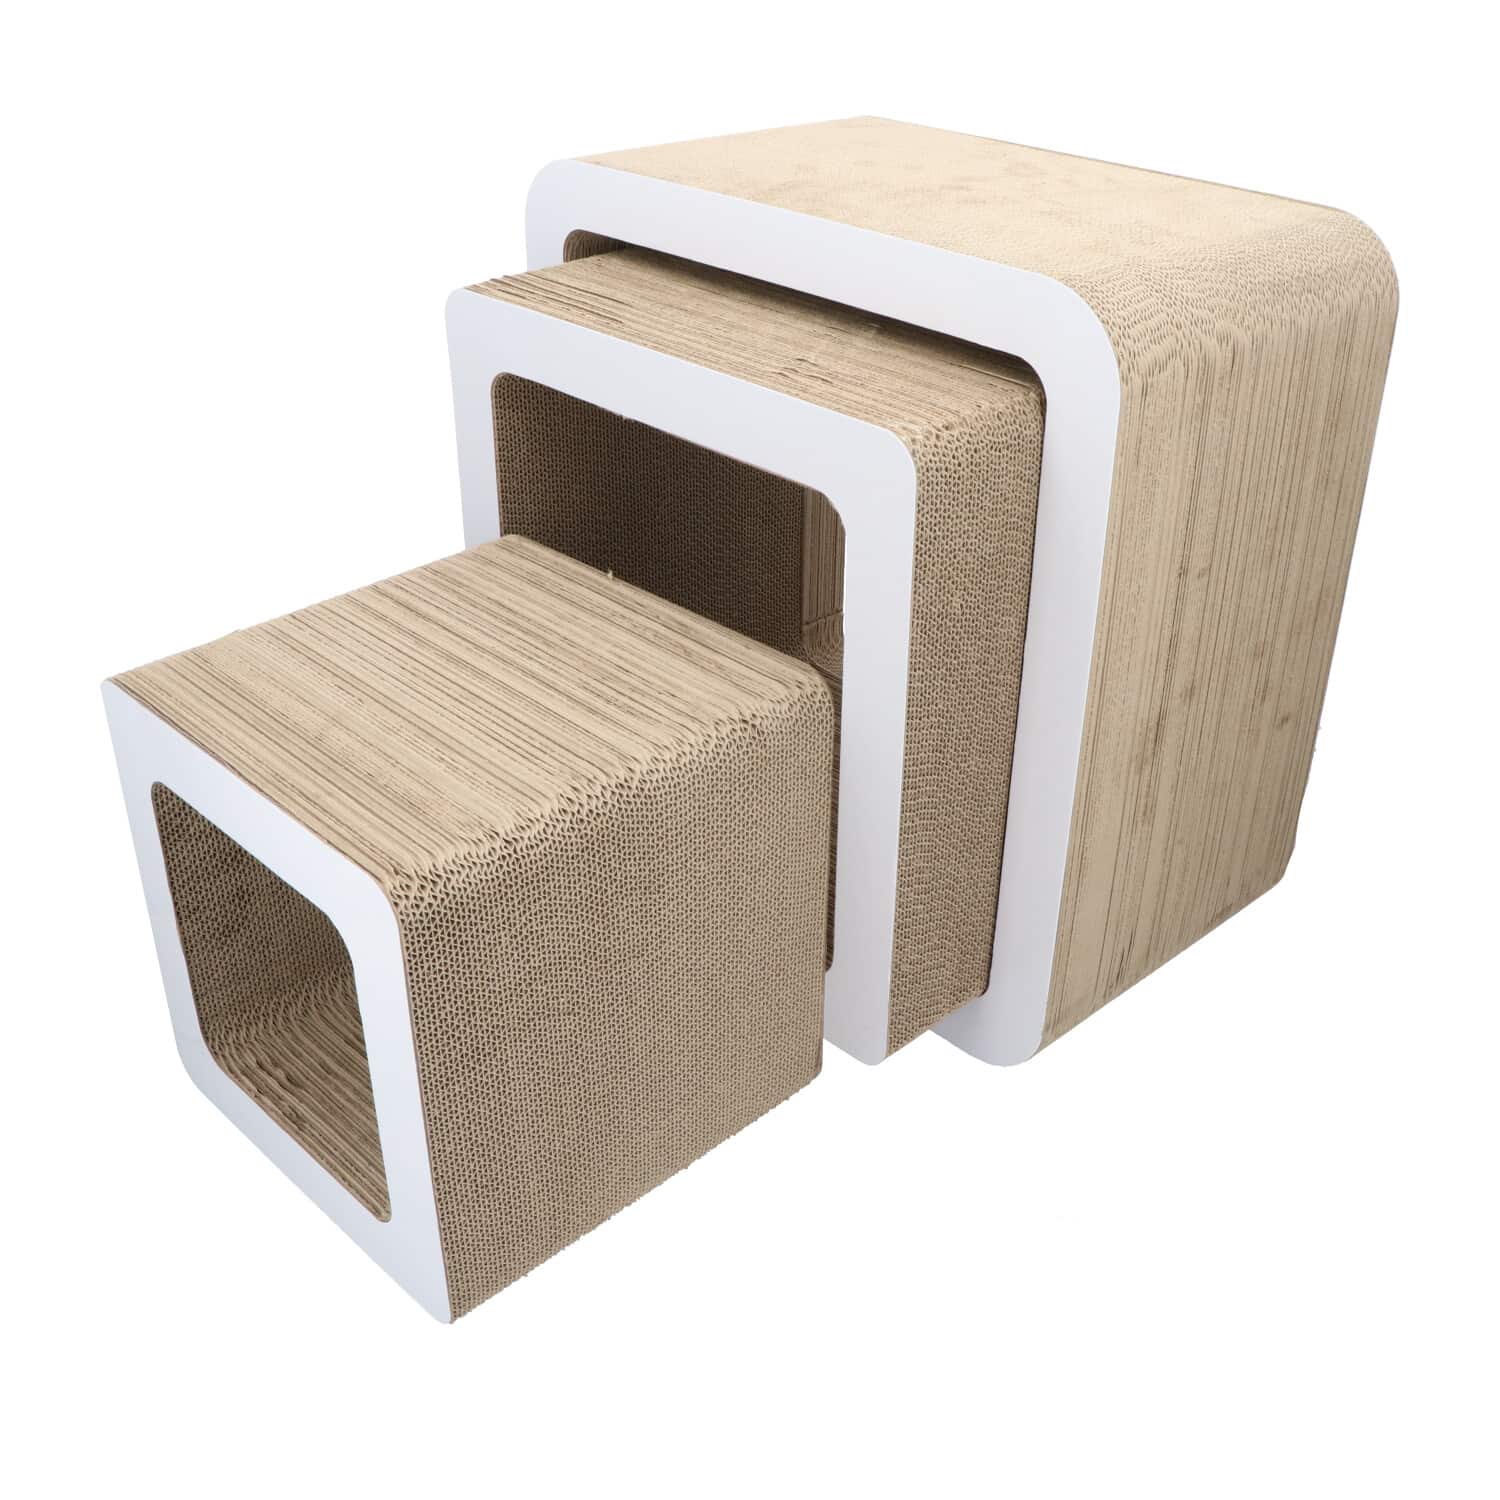 4animalz® Cube White - kartonnen krabpaal katten - 45x24x45cm - Wit